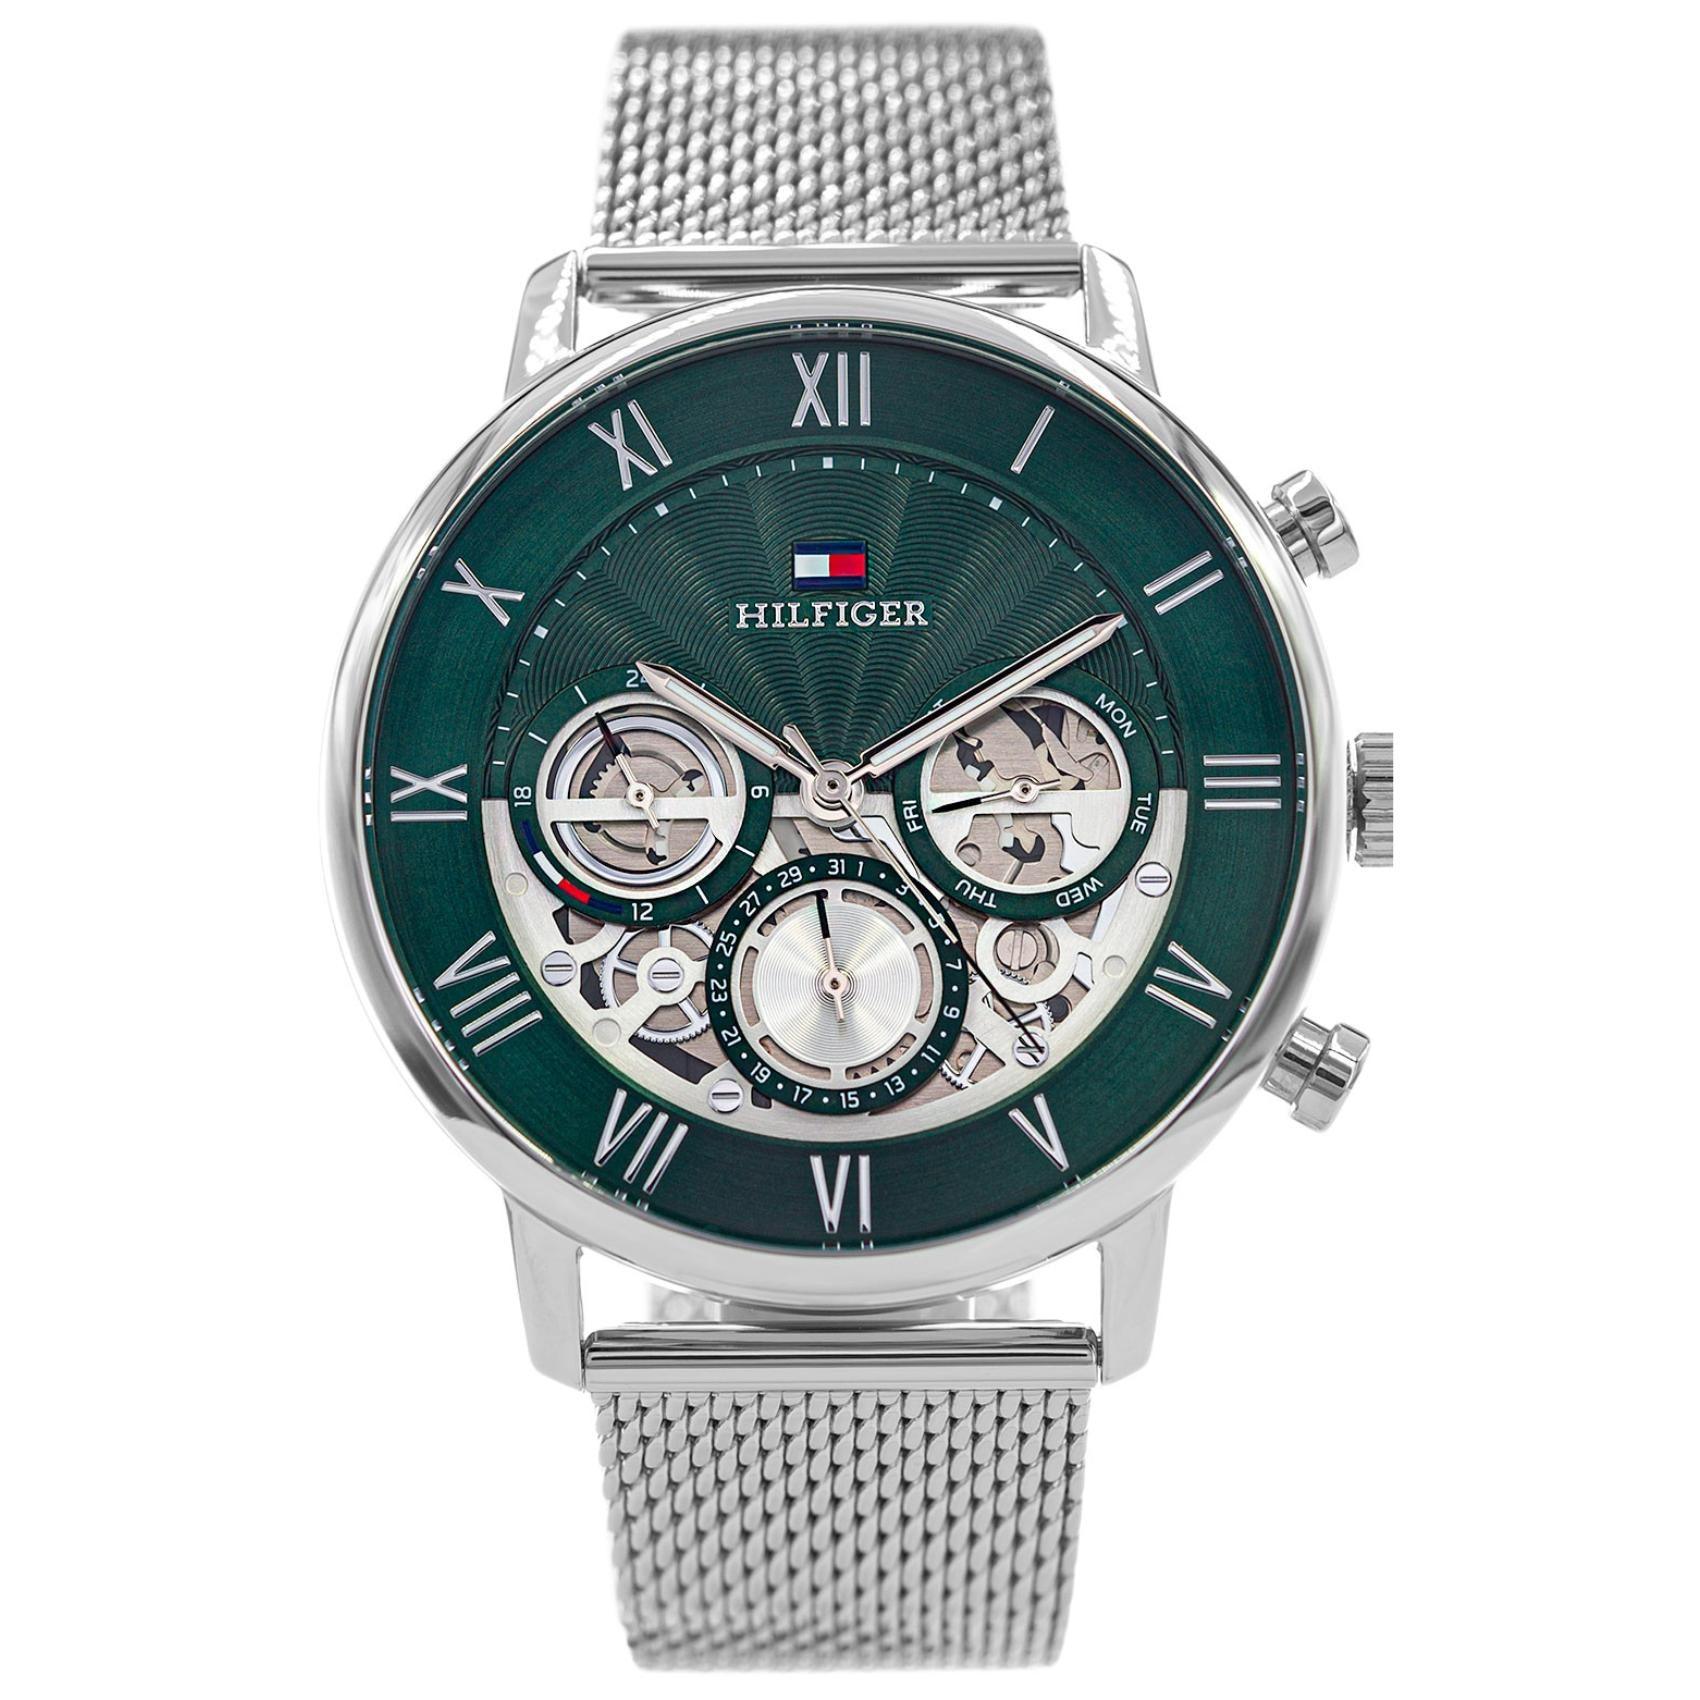 Ανδρικό ρολόι Tommy Hilfiger Legend 1710567 με ασημί ατσάλινο μπρασελέ και πράσινο skeleton καντράν διαμέτρου 44mm με ημερομηνία και ημέρα.